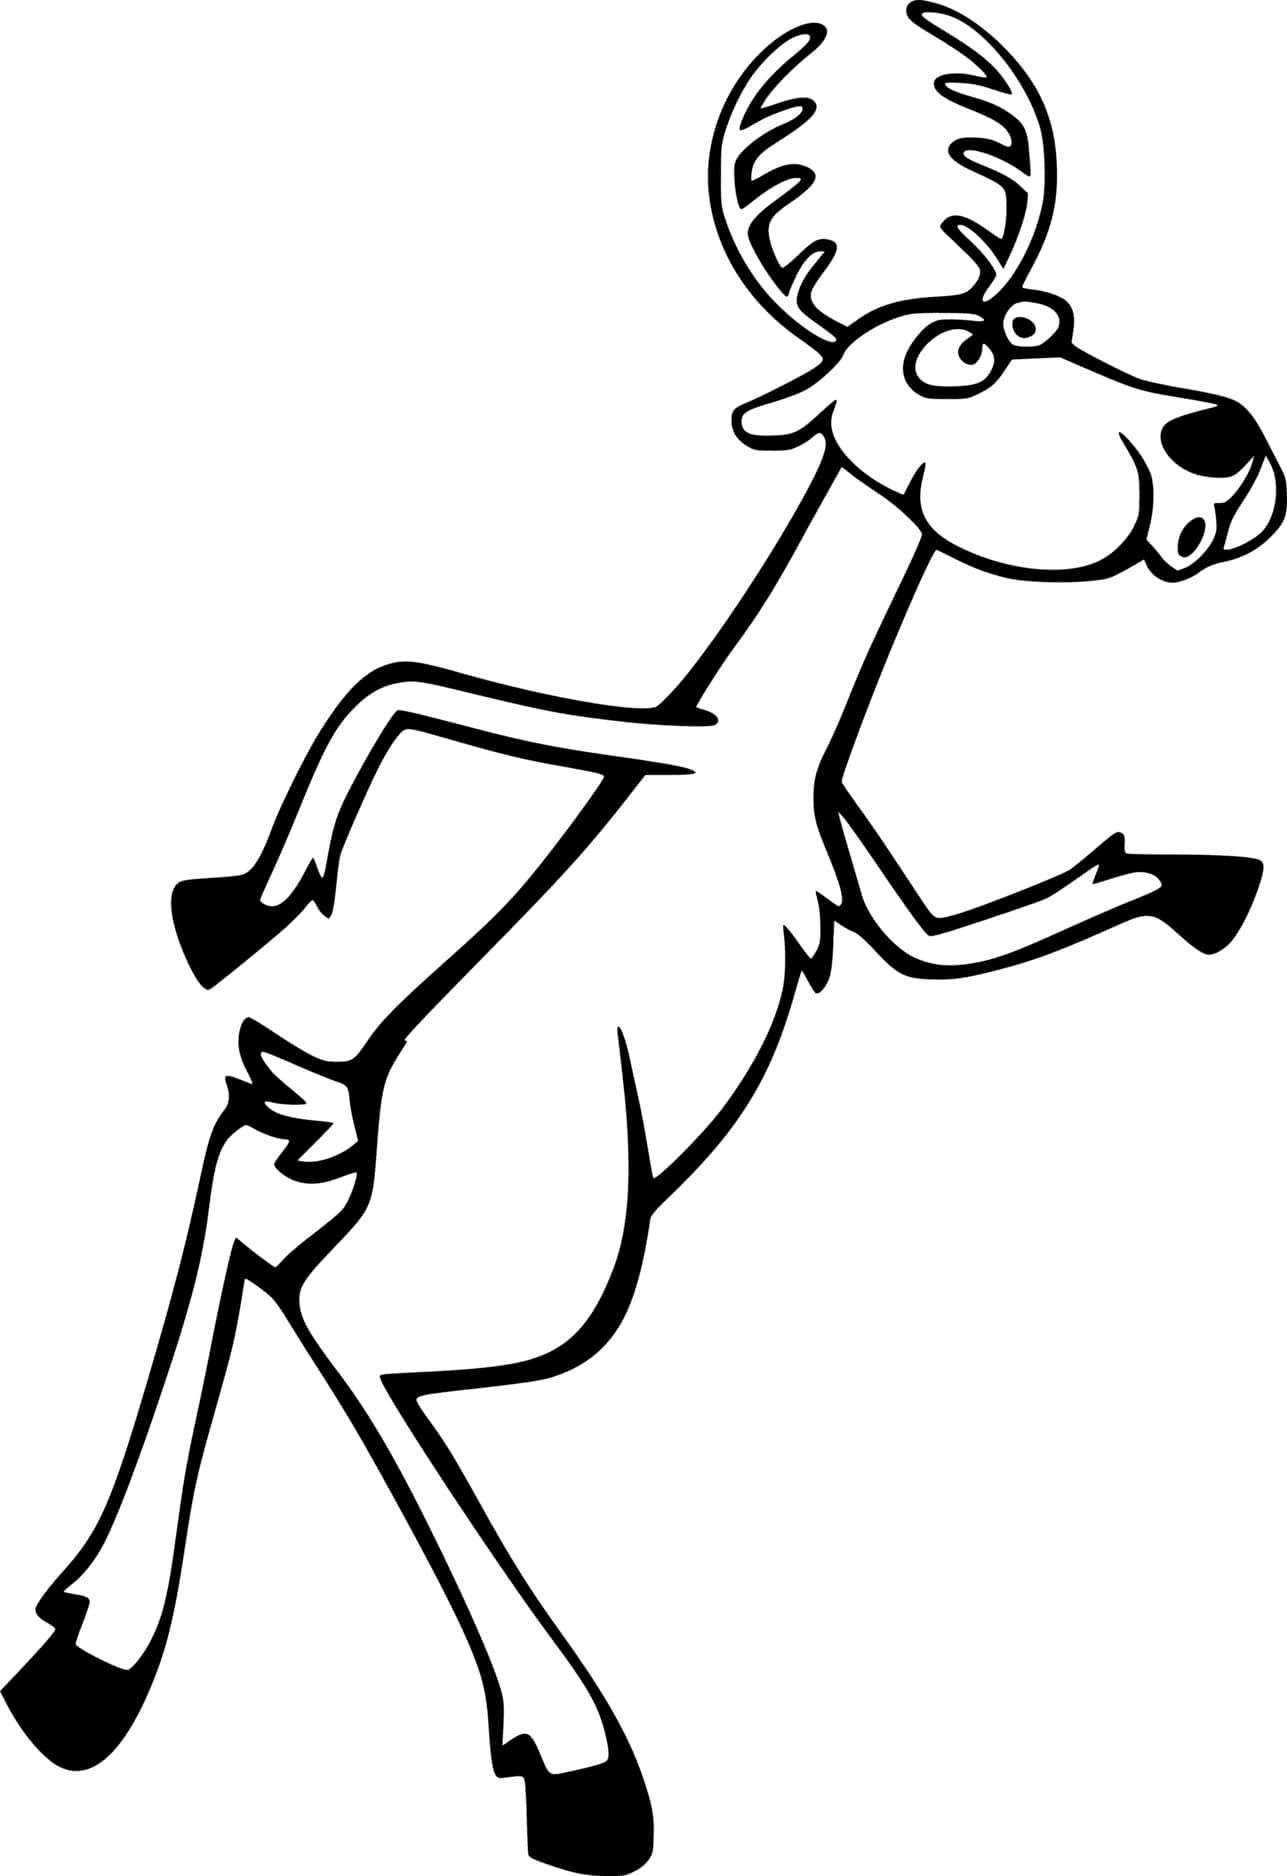 Veado vertical de desenho animado from Deer